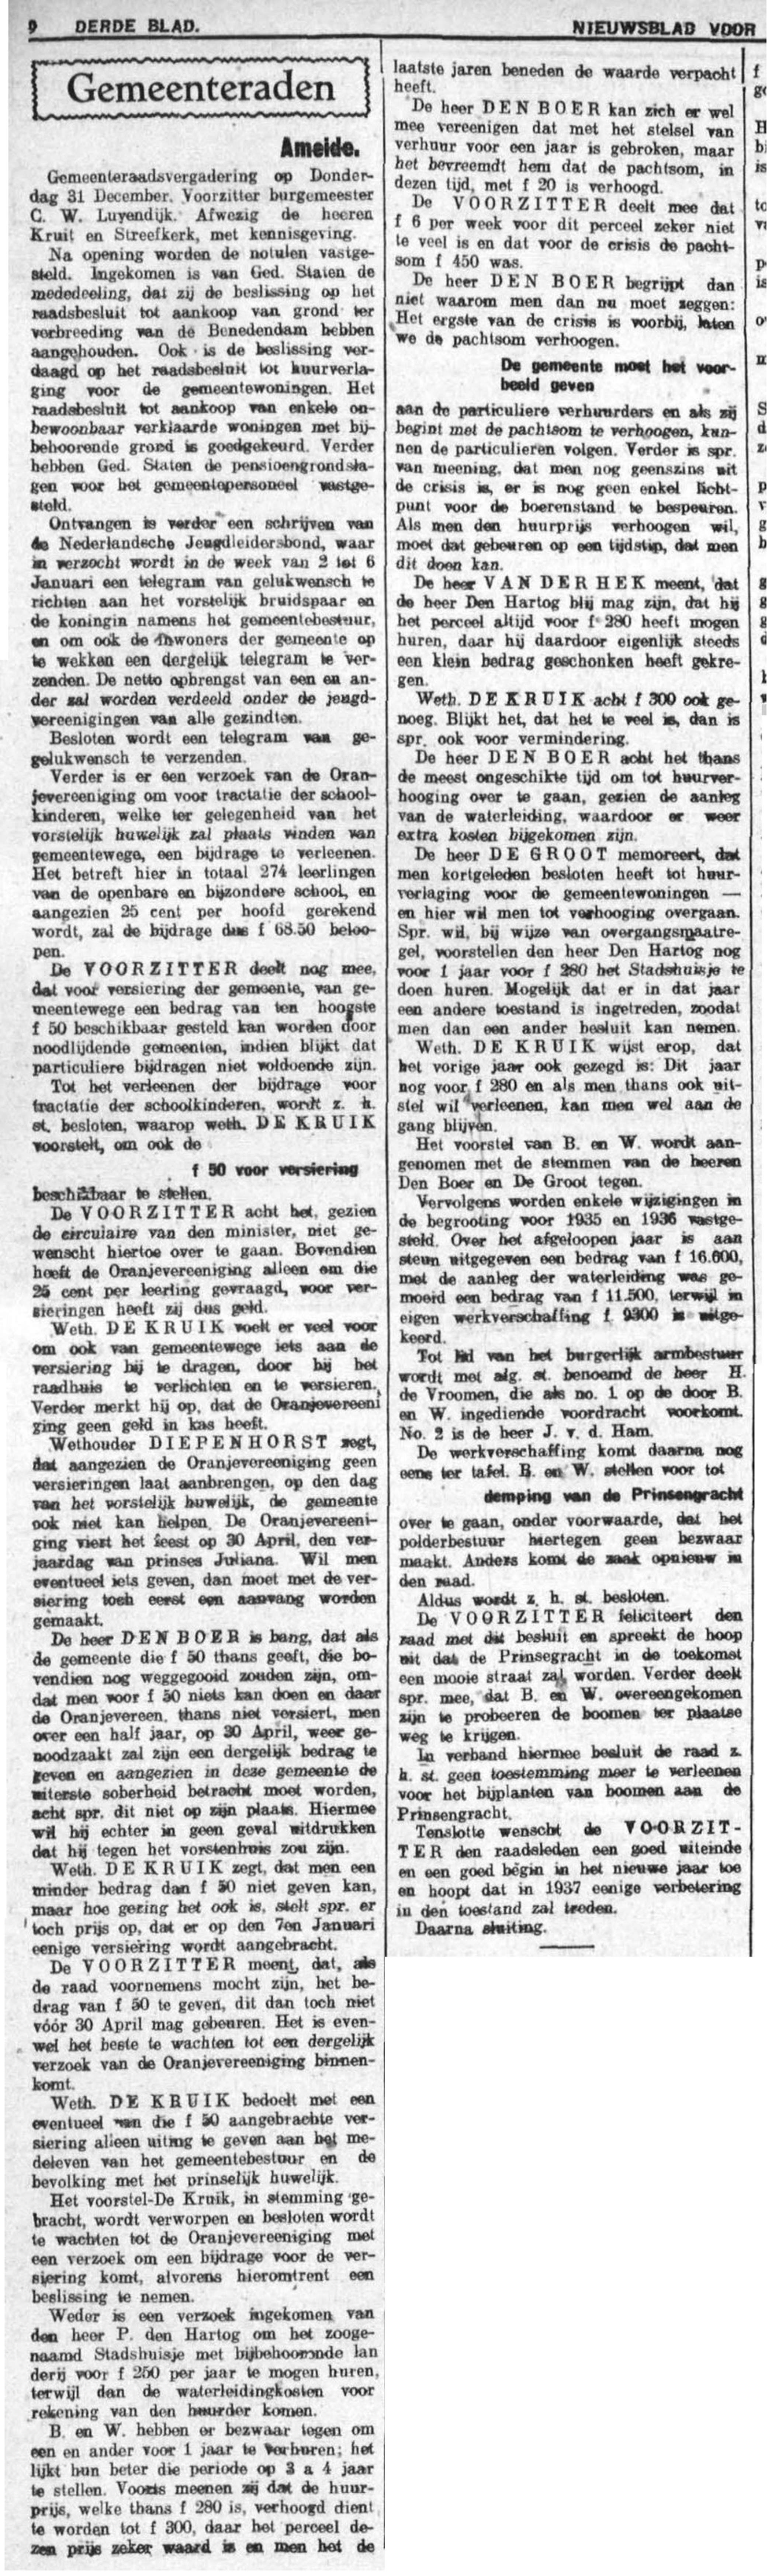 Schoonhovensche Courant 07767 1937-02-03 artikel 02